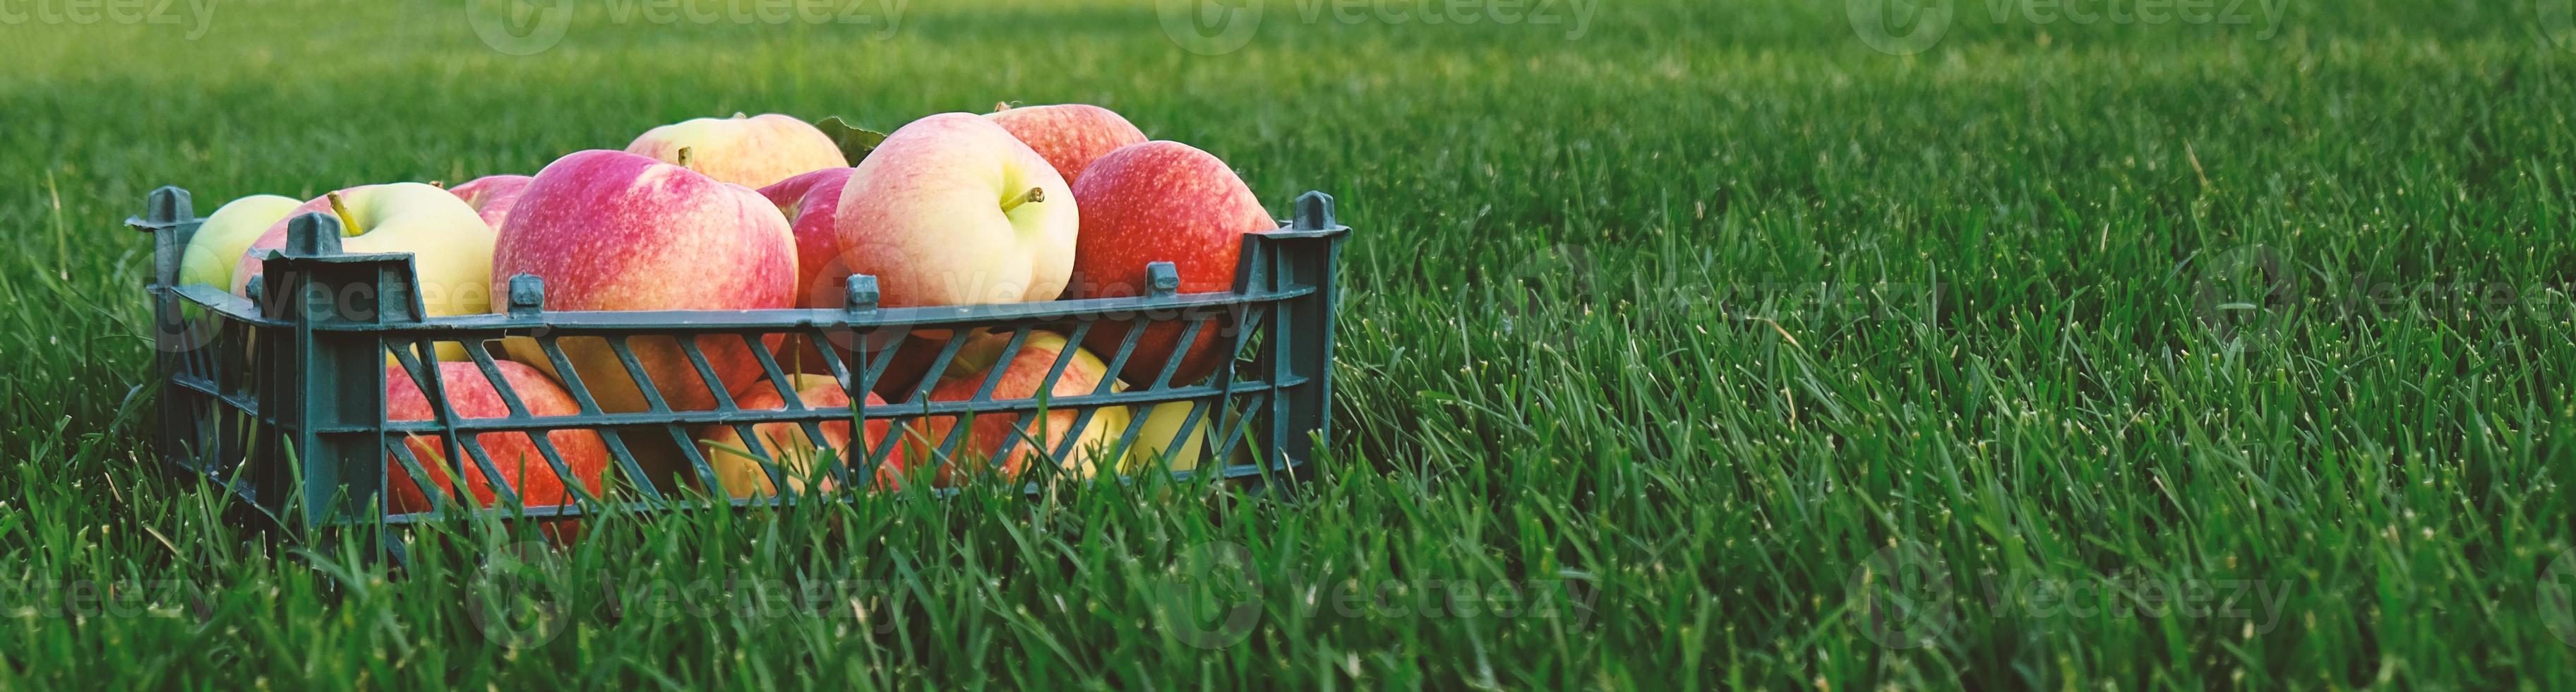 manzanas amarillas rojas en una caja de plástico sobre la hierba verde. cosecha de frutas en el jardín en otoño, temporada del festival de la cosecha. manzanas de granja orgánica. plantilla para publicidad. foto